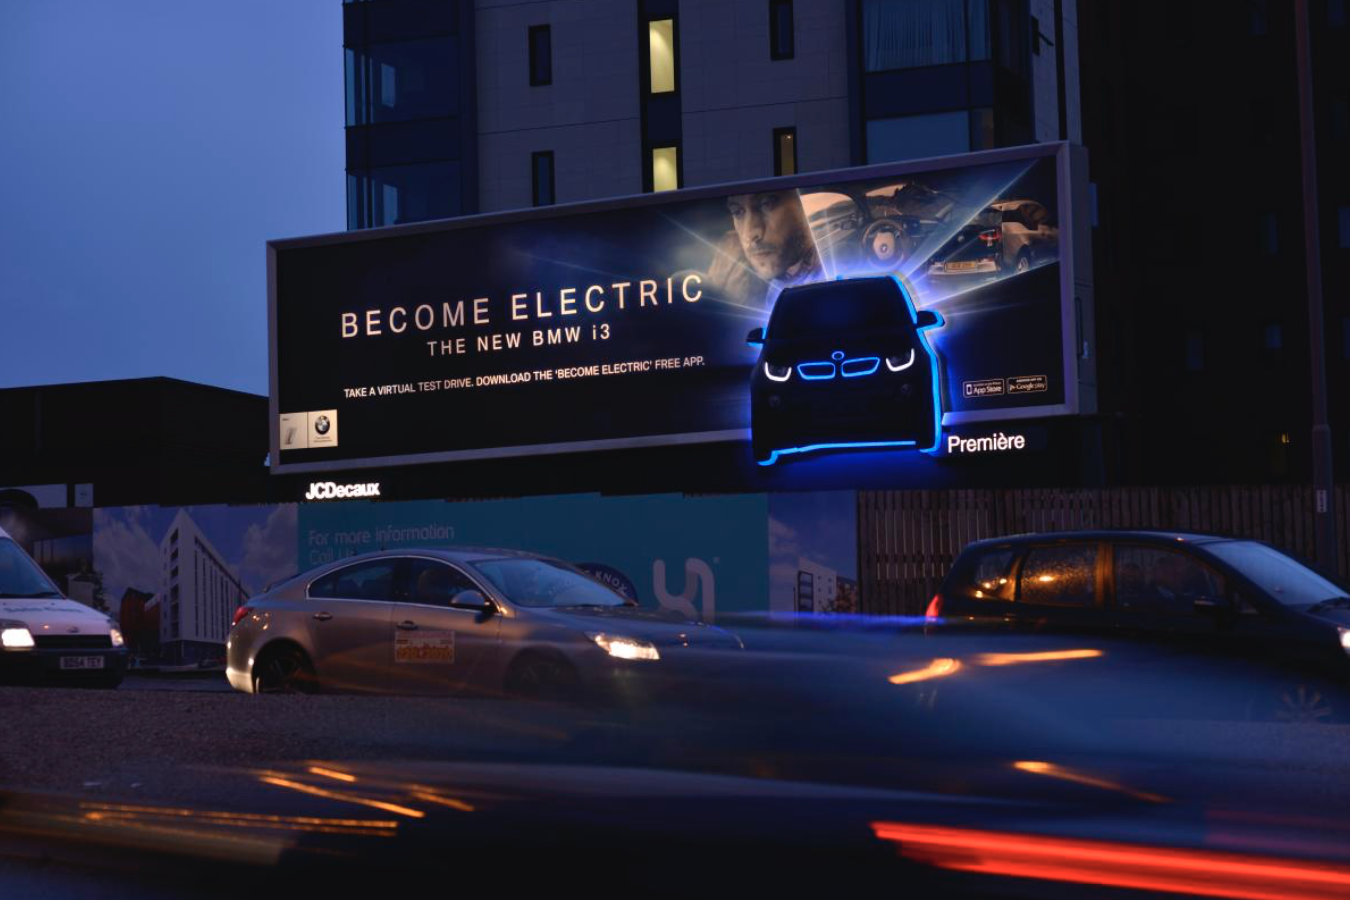 a customized digital billboard by BMW